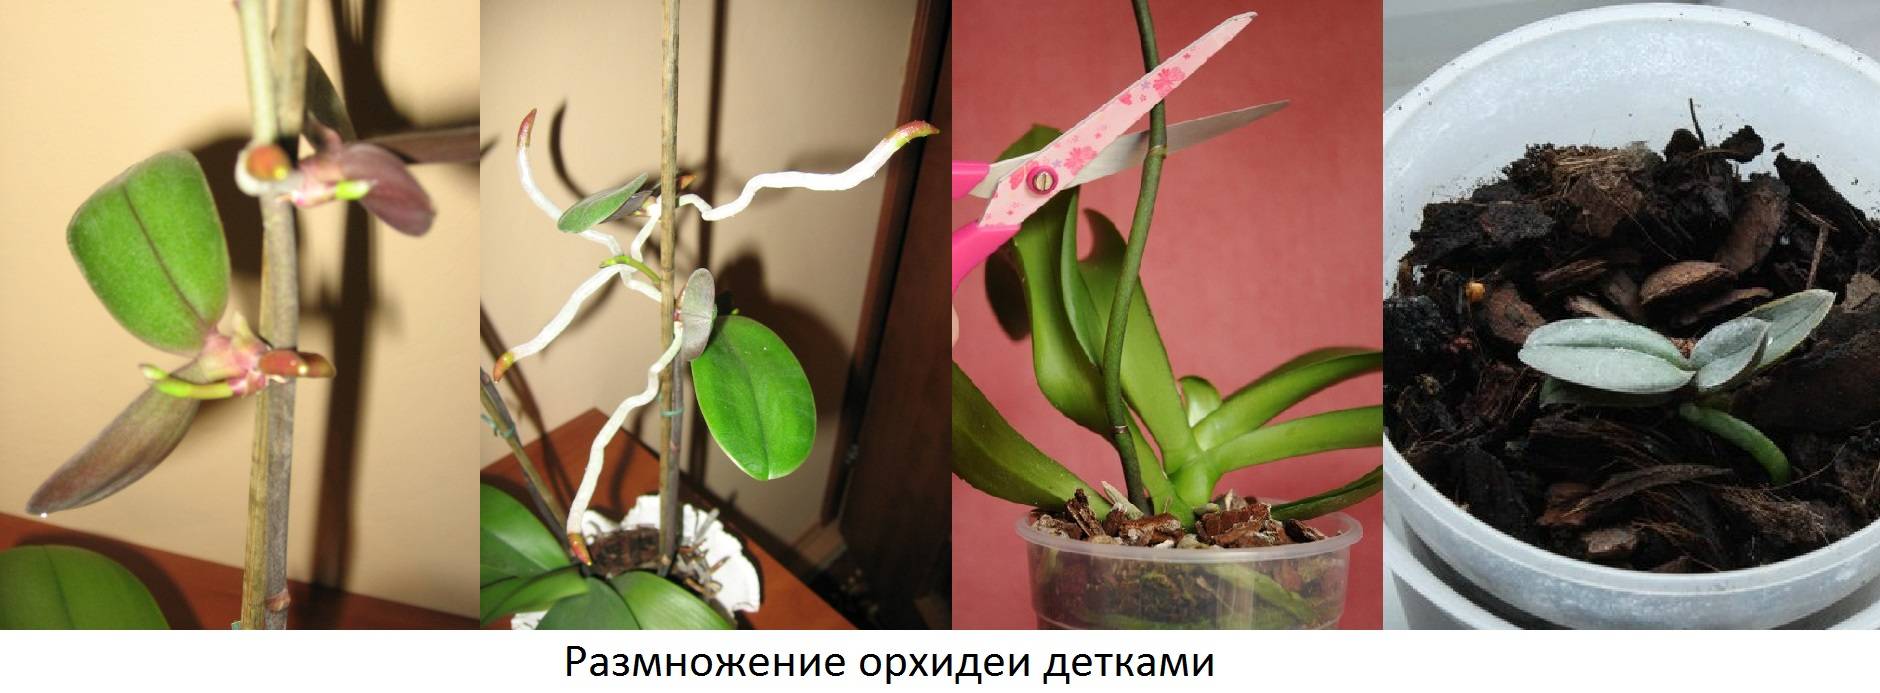 Способы размножения орхидей в домашних условиях. разделение, черенкование, укоренение деток. фото — ботаничка